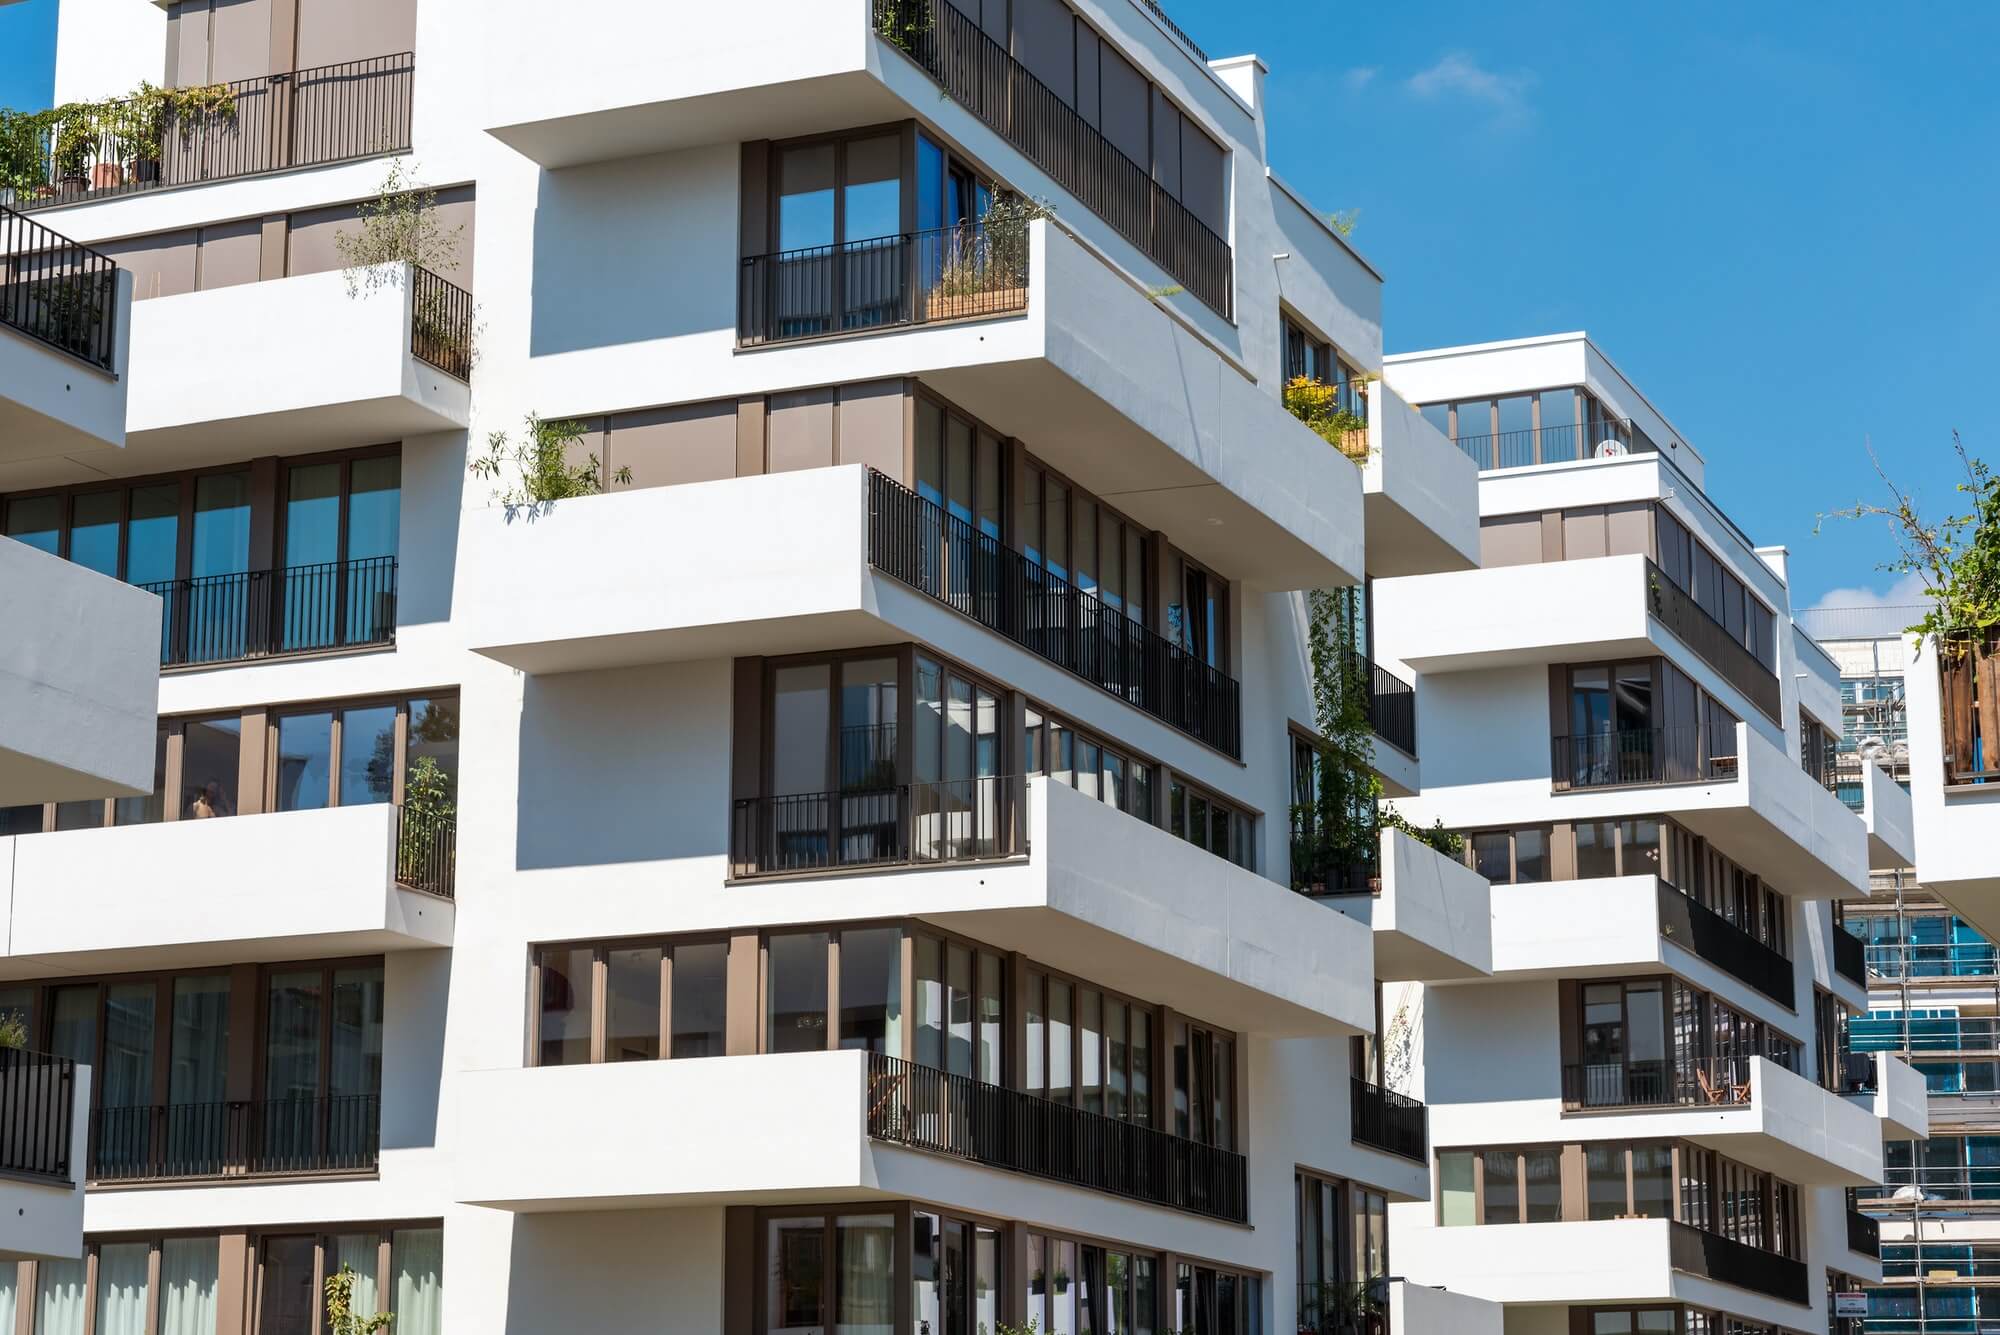 Modern blocks of flats in Berlin